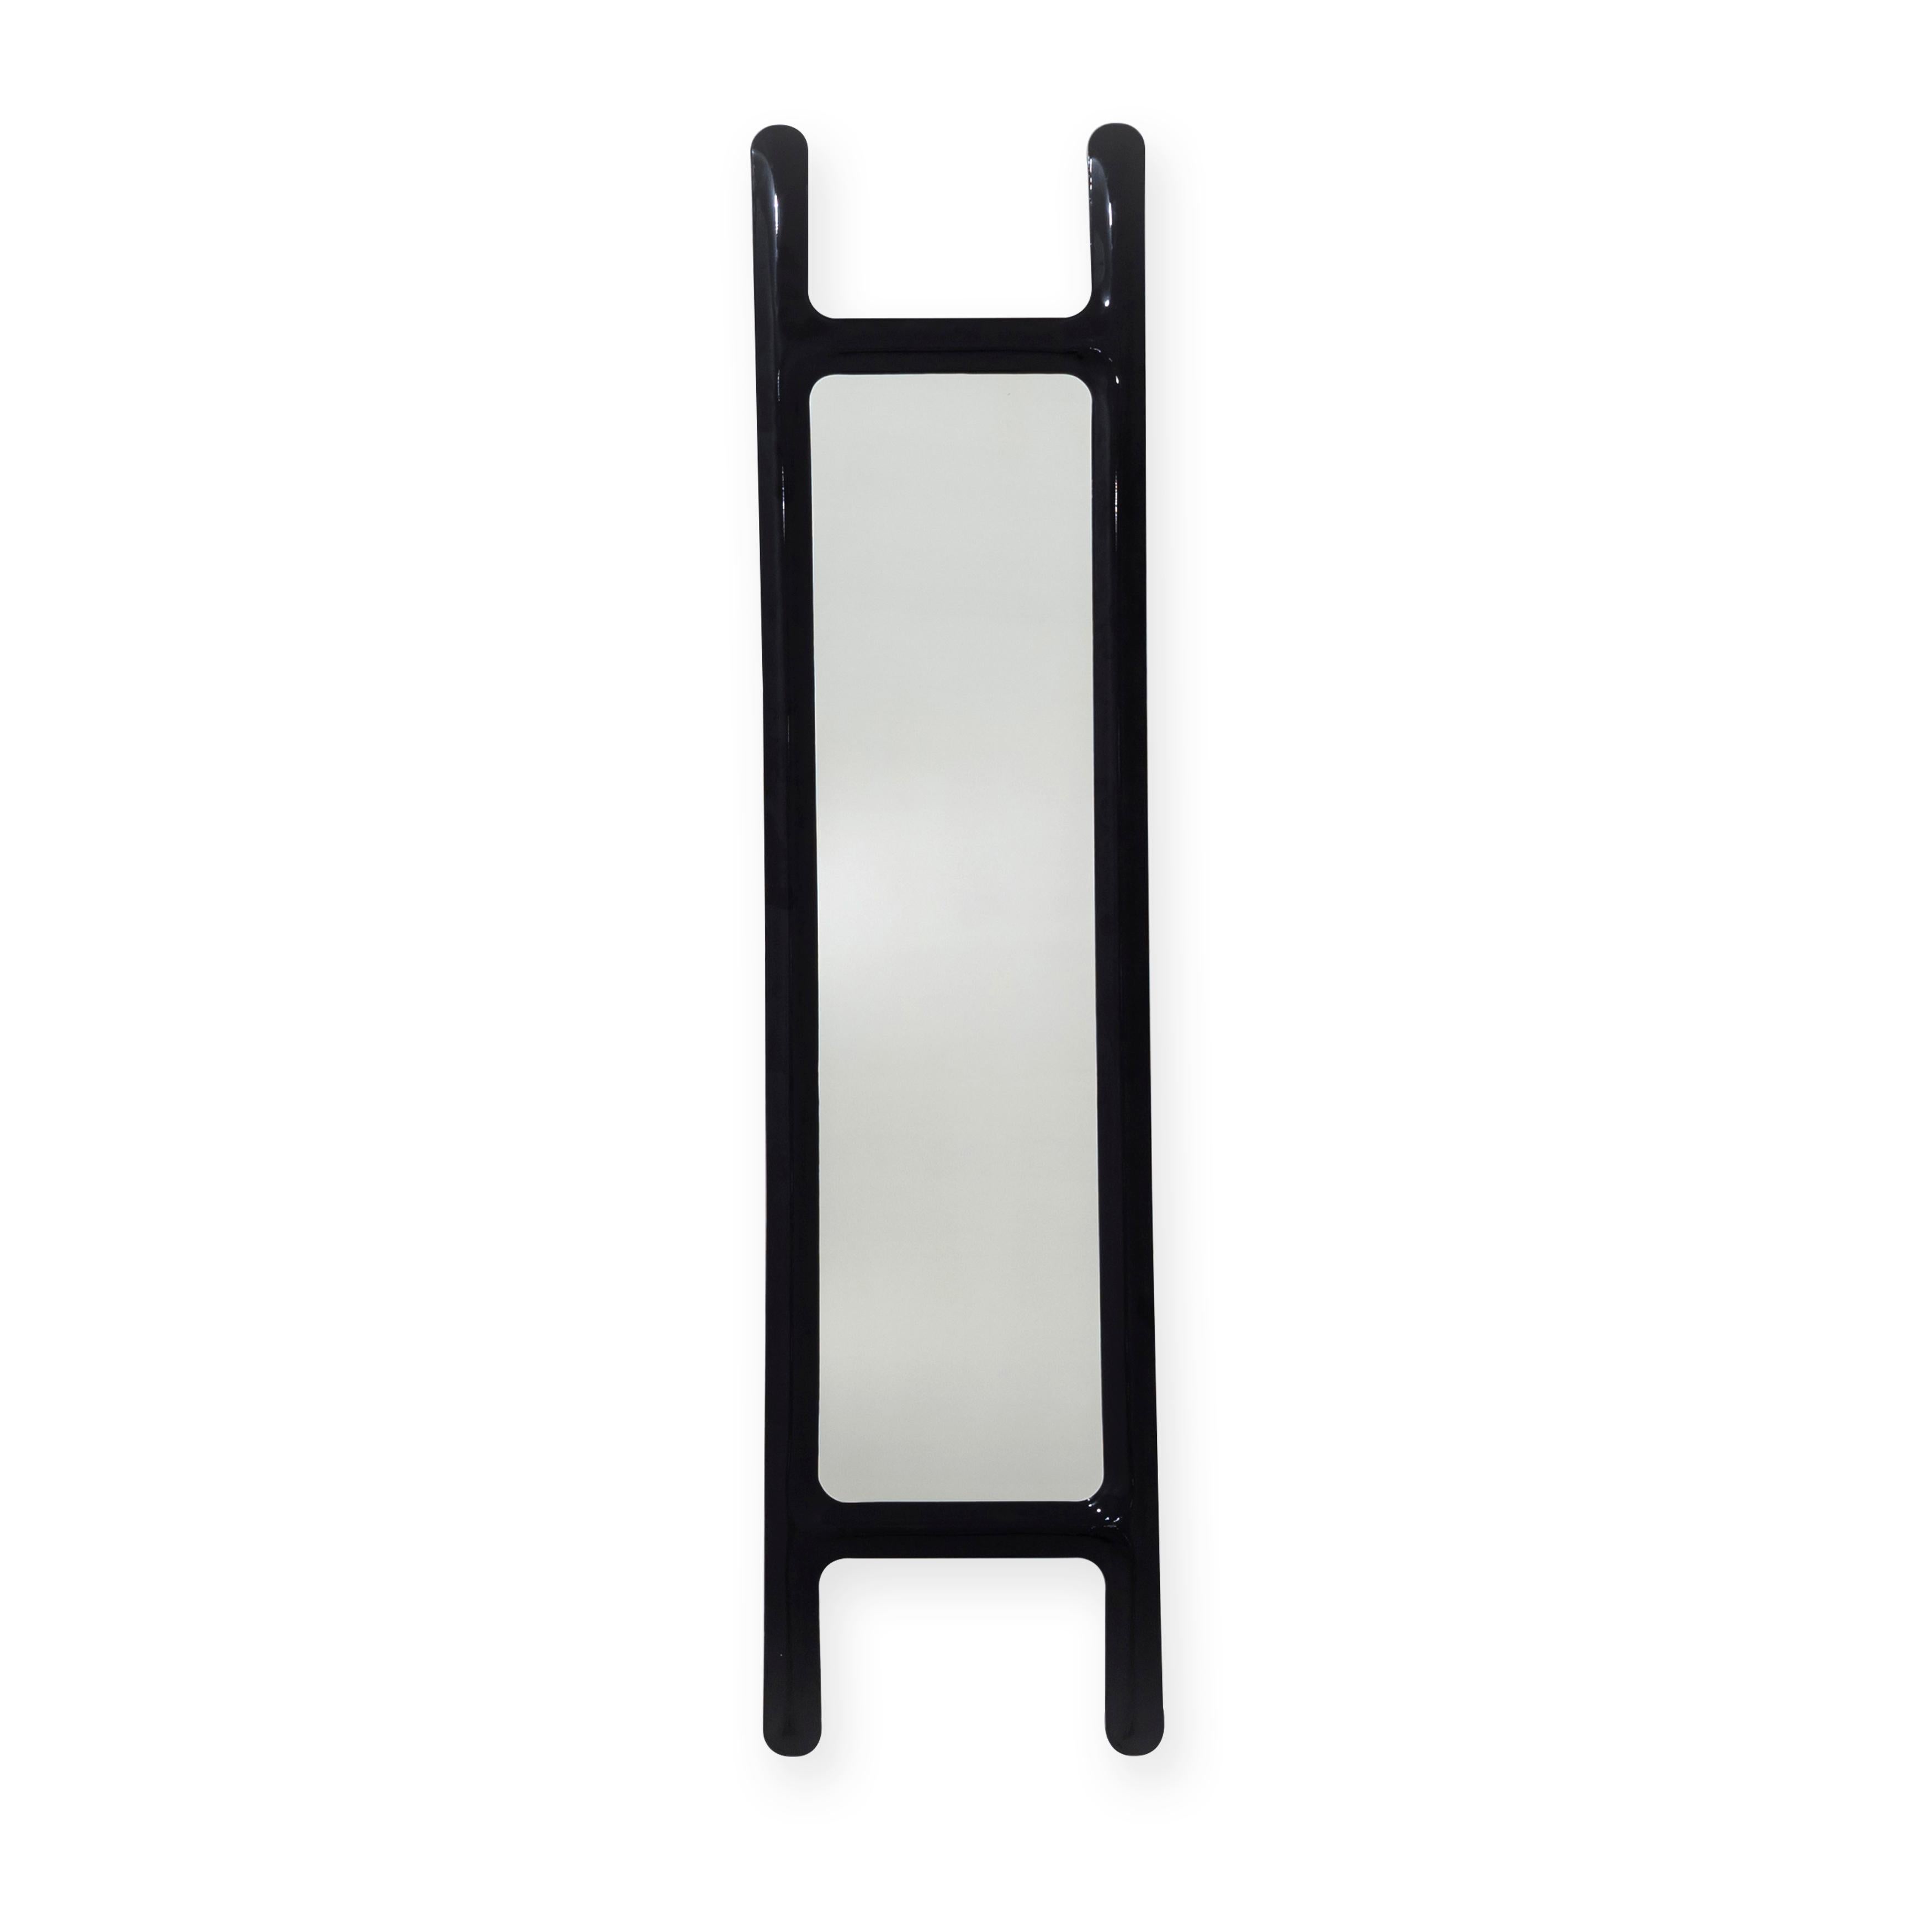 Miroir mural sculptural Black Drab par Zieta
Dimensions : D 6 x L 46 x H 188 cm 
Matériau : Miroir, acier au carbone. 
Finition : Revêtement en poudre noir brillant.
Également disponible en couleurs : acier inoxydable ou revêtement en poudre. 


Un